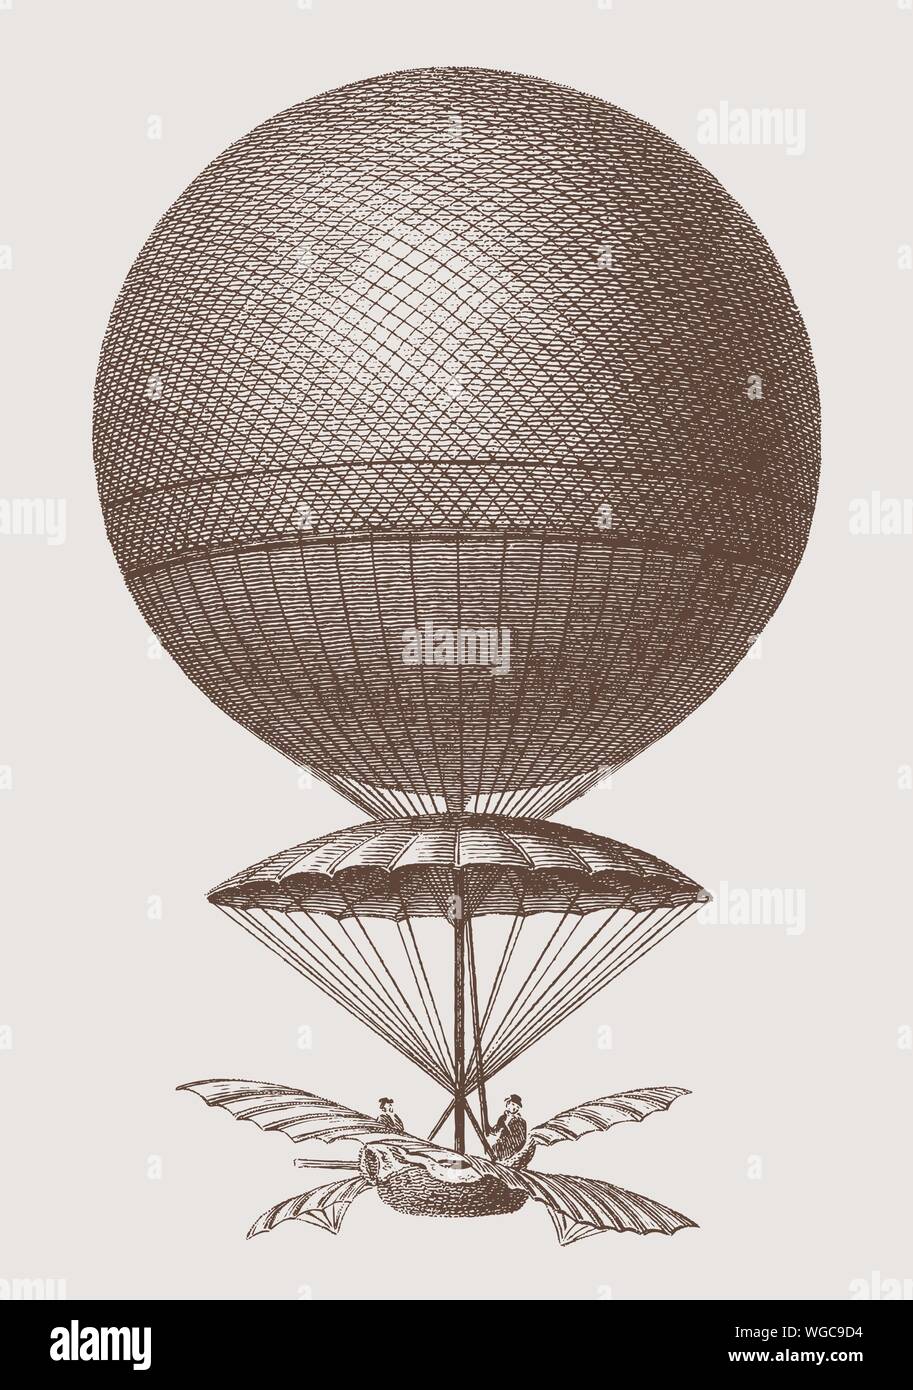 Historische Ballon von Jean-Pierre Blanchard von 1785 absteigend. Abbildung: Nach einem Stich aus dem frühen 19. Jahrhundert. Editierbare Layer Stock Vektor